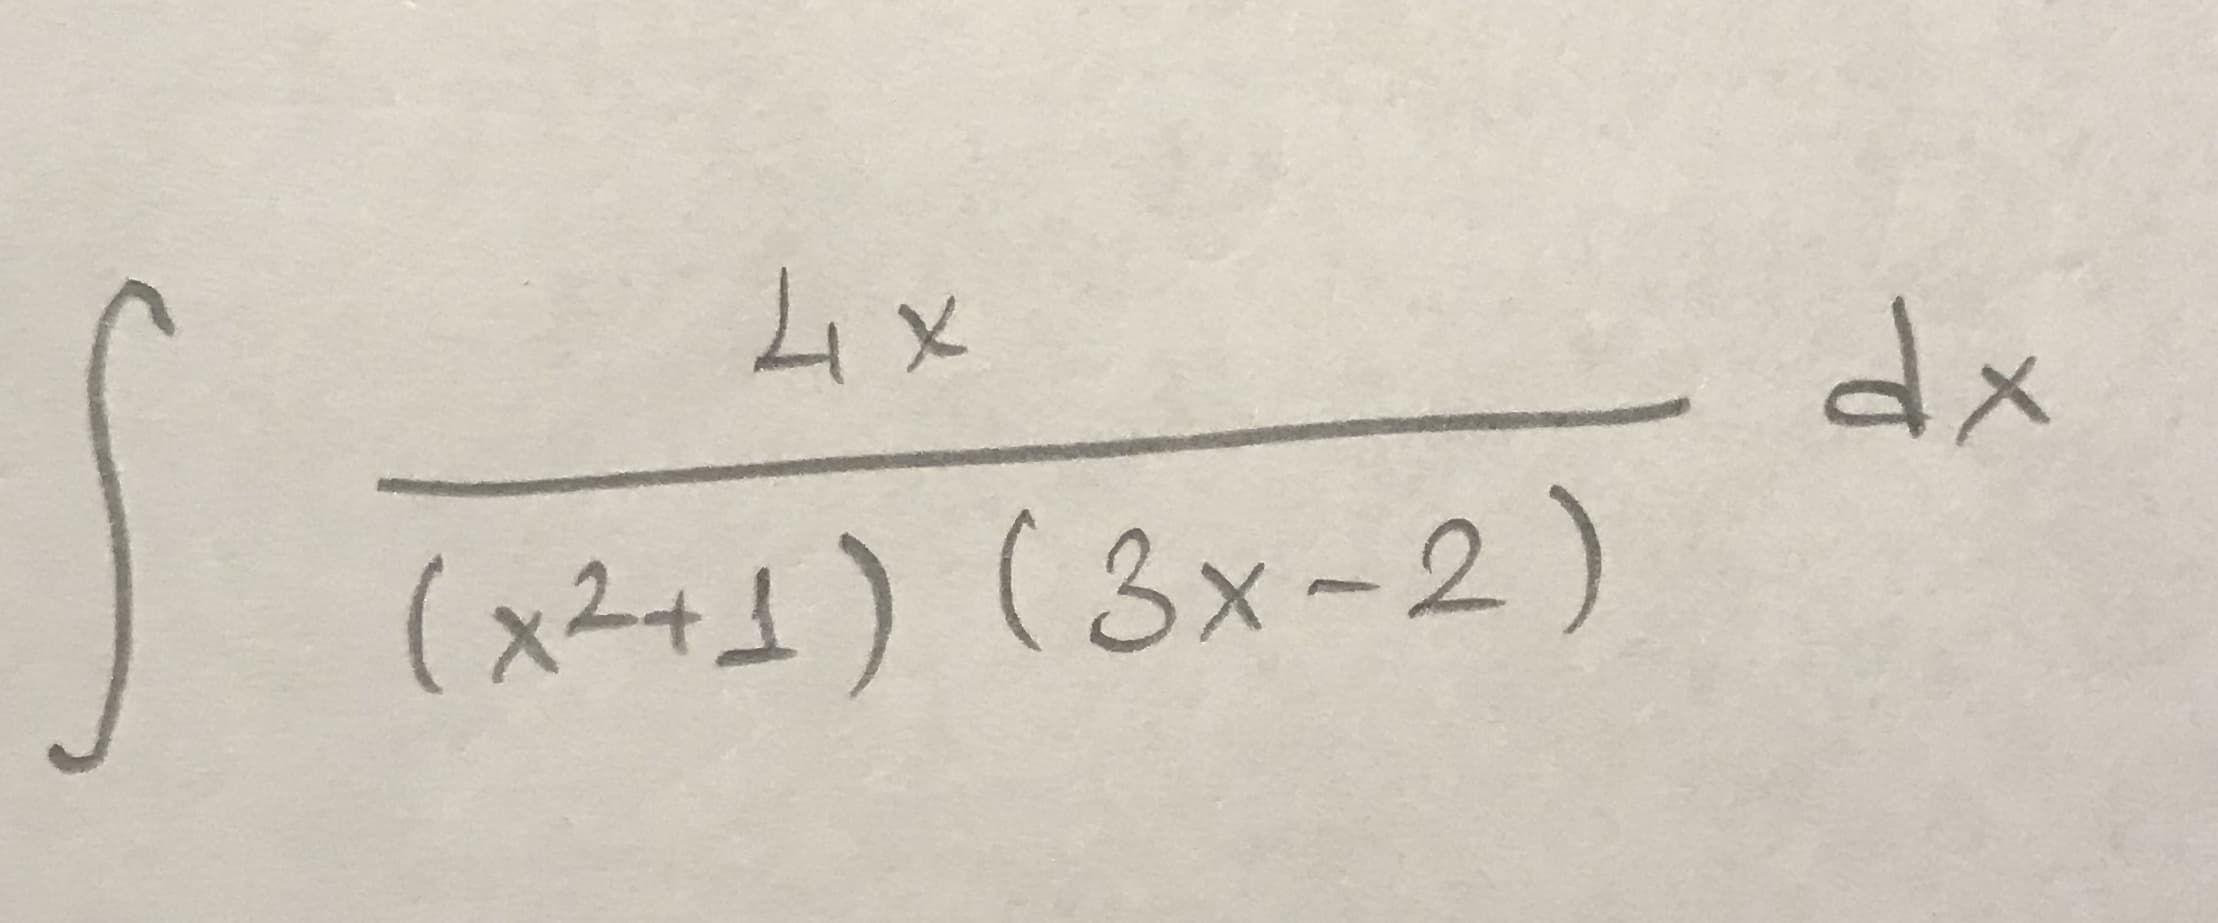 ム×
dx
(x2+1) (3x-2)
